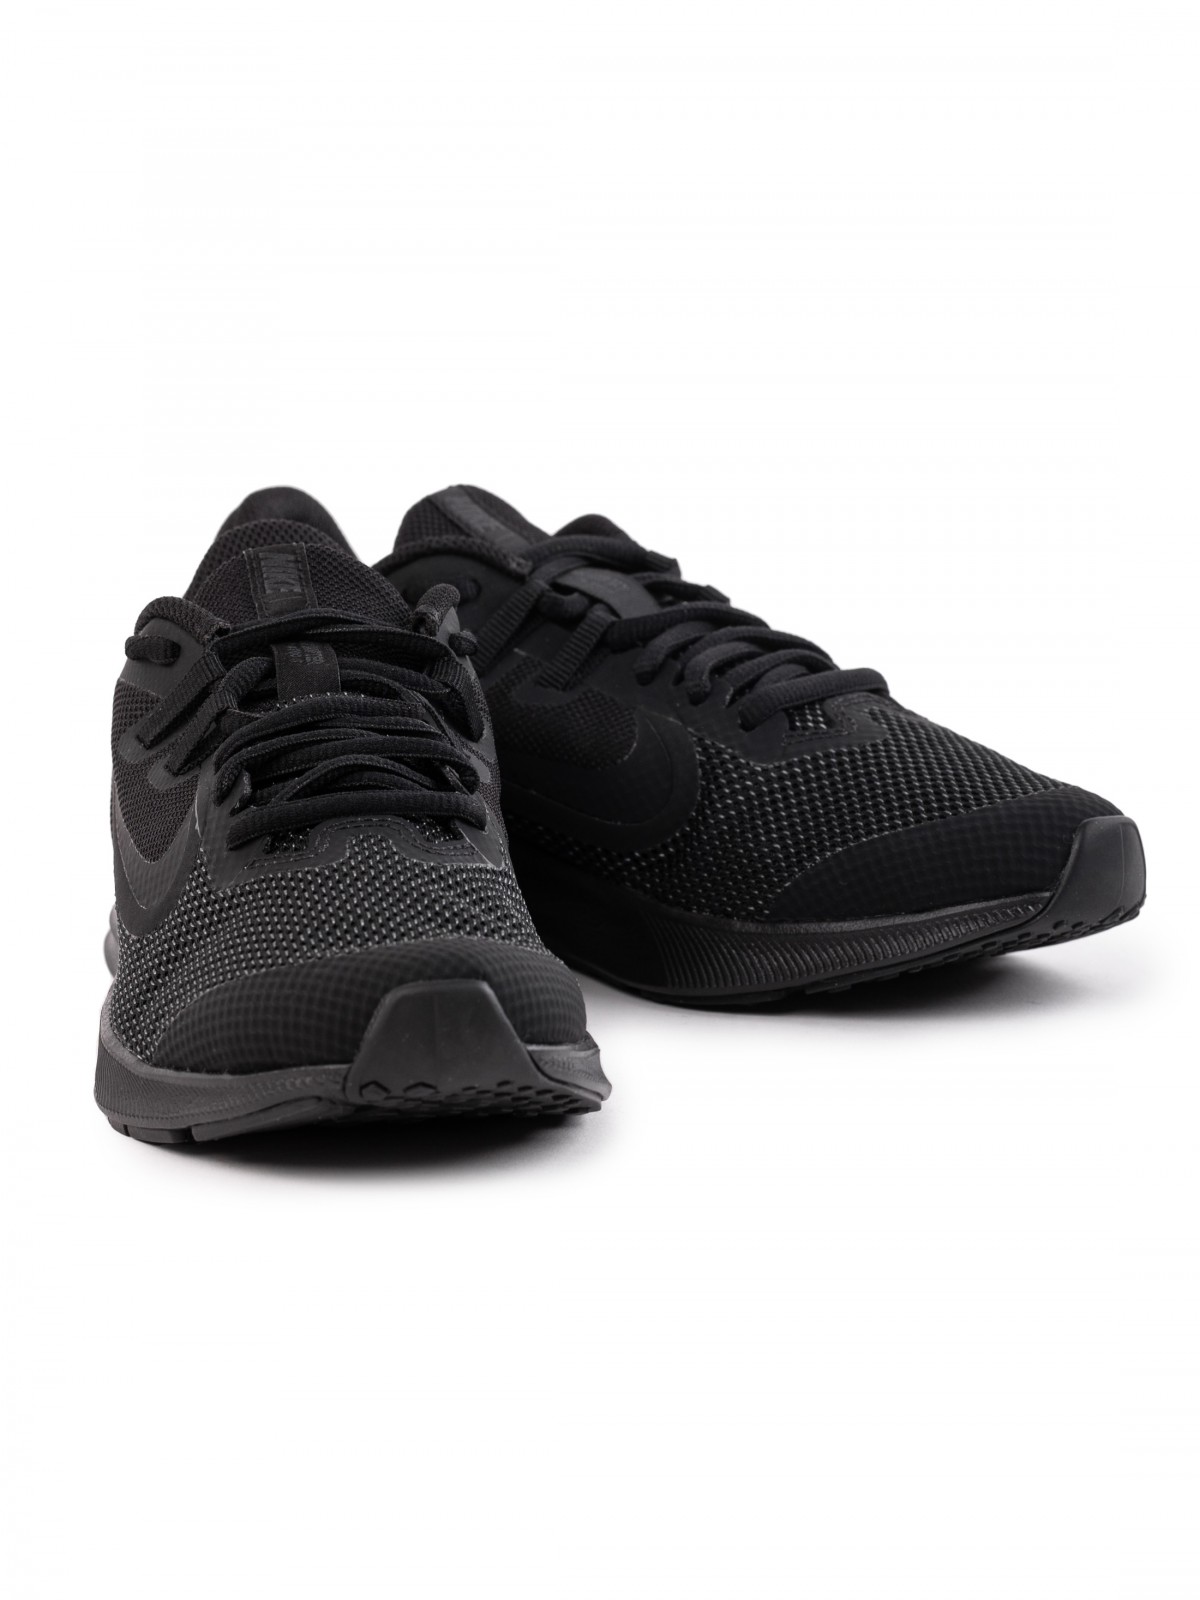 Nike Downshifter 9 - Sneakersy niskie